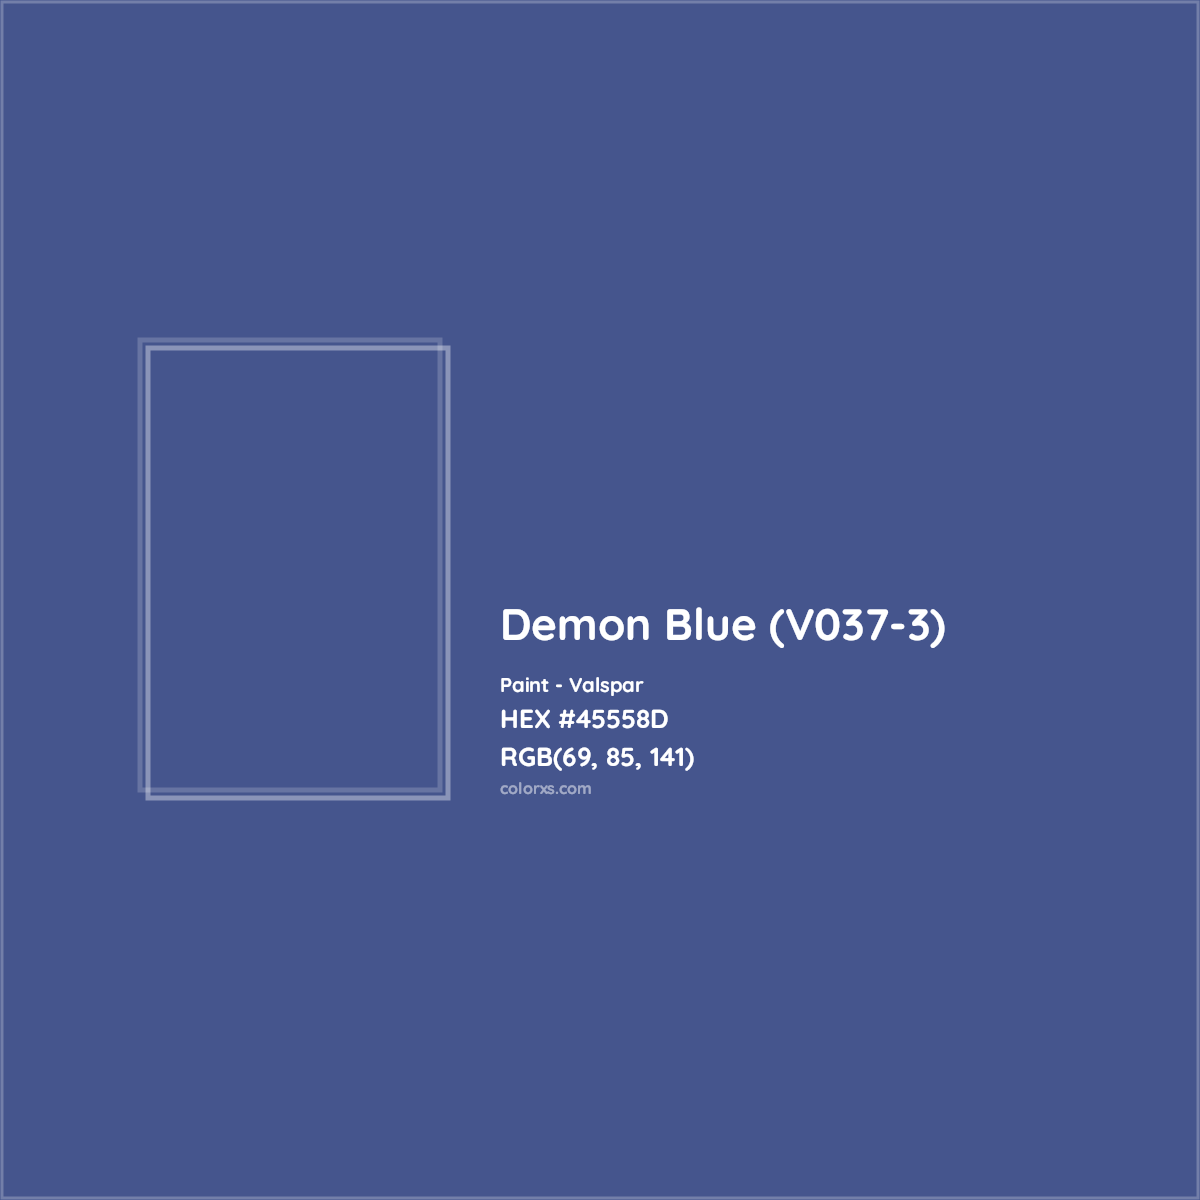 HEX #45558D Demon Blue (V037-3) Paint Valspar - Color Code